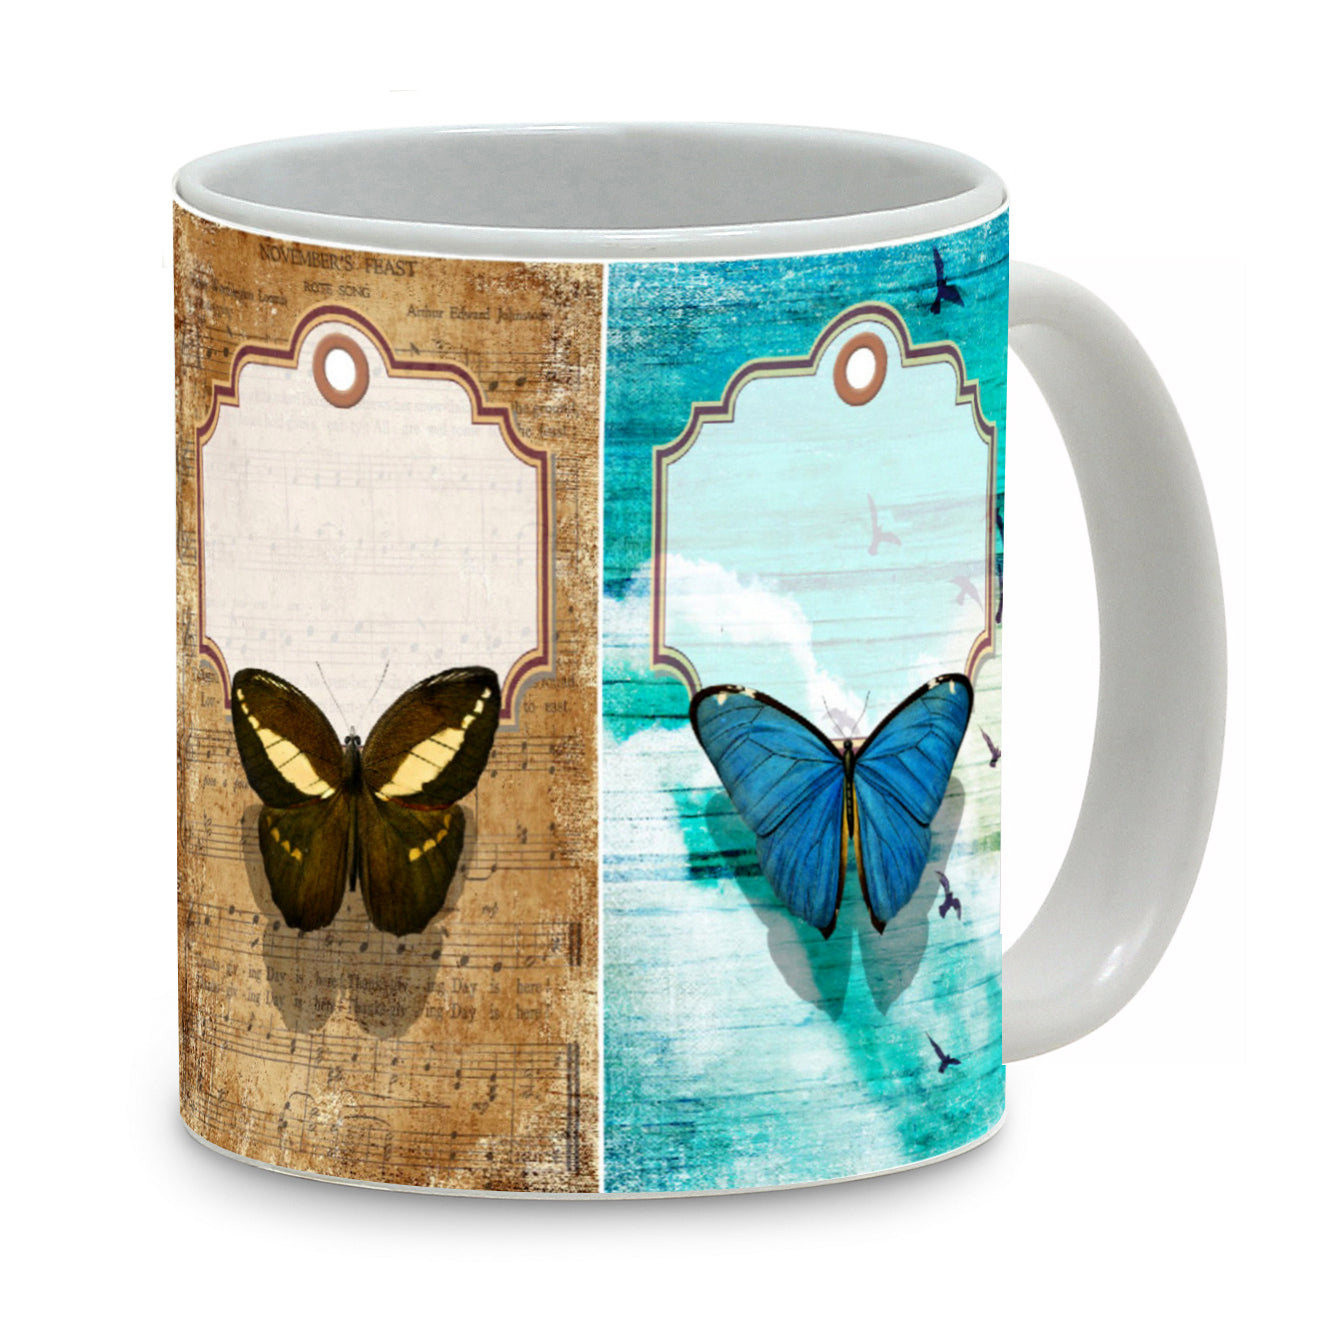 SUBLIMART: Pets Art - Mug featuring a beautiful butterflies design